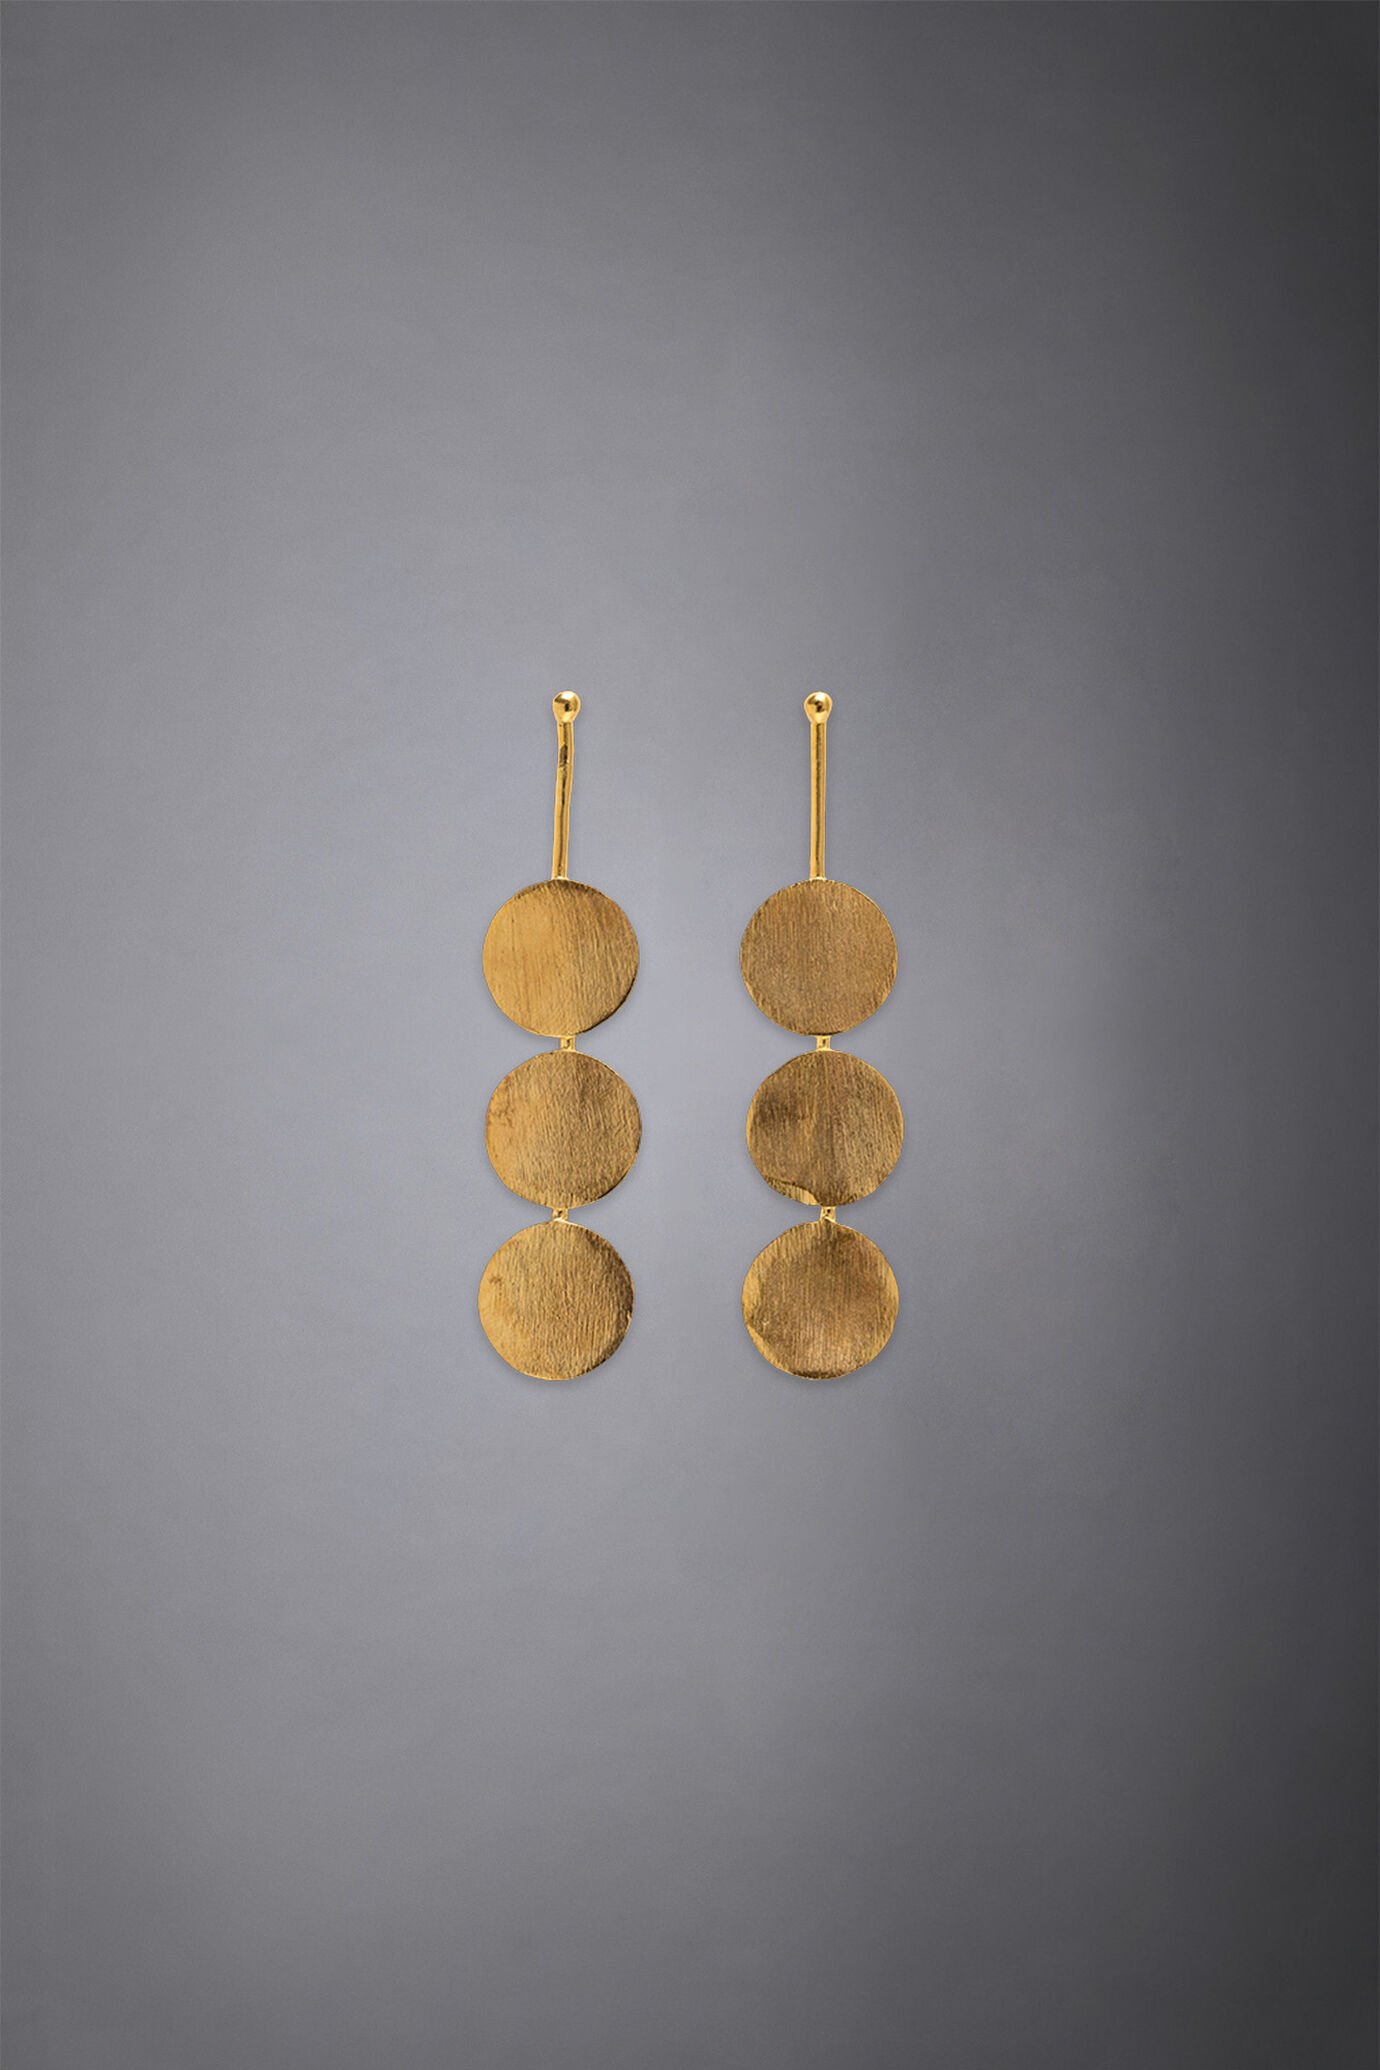 Women's earrings made of brass